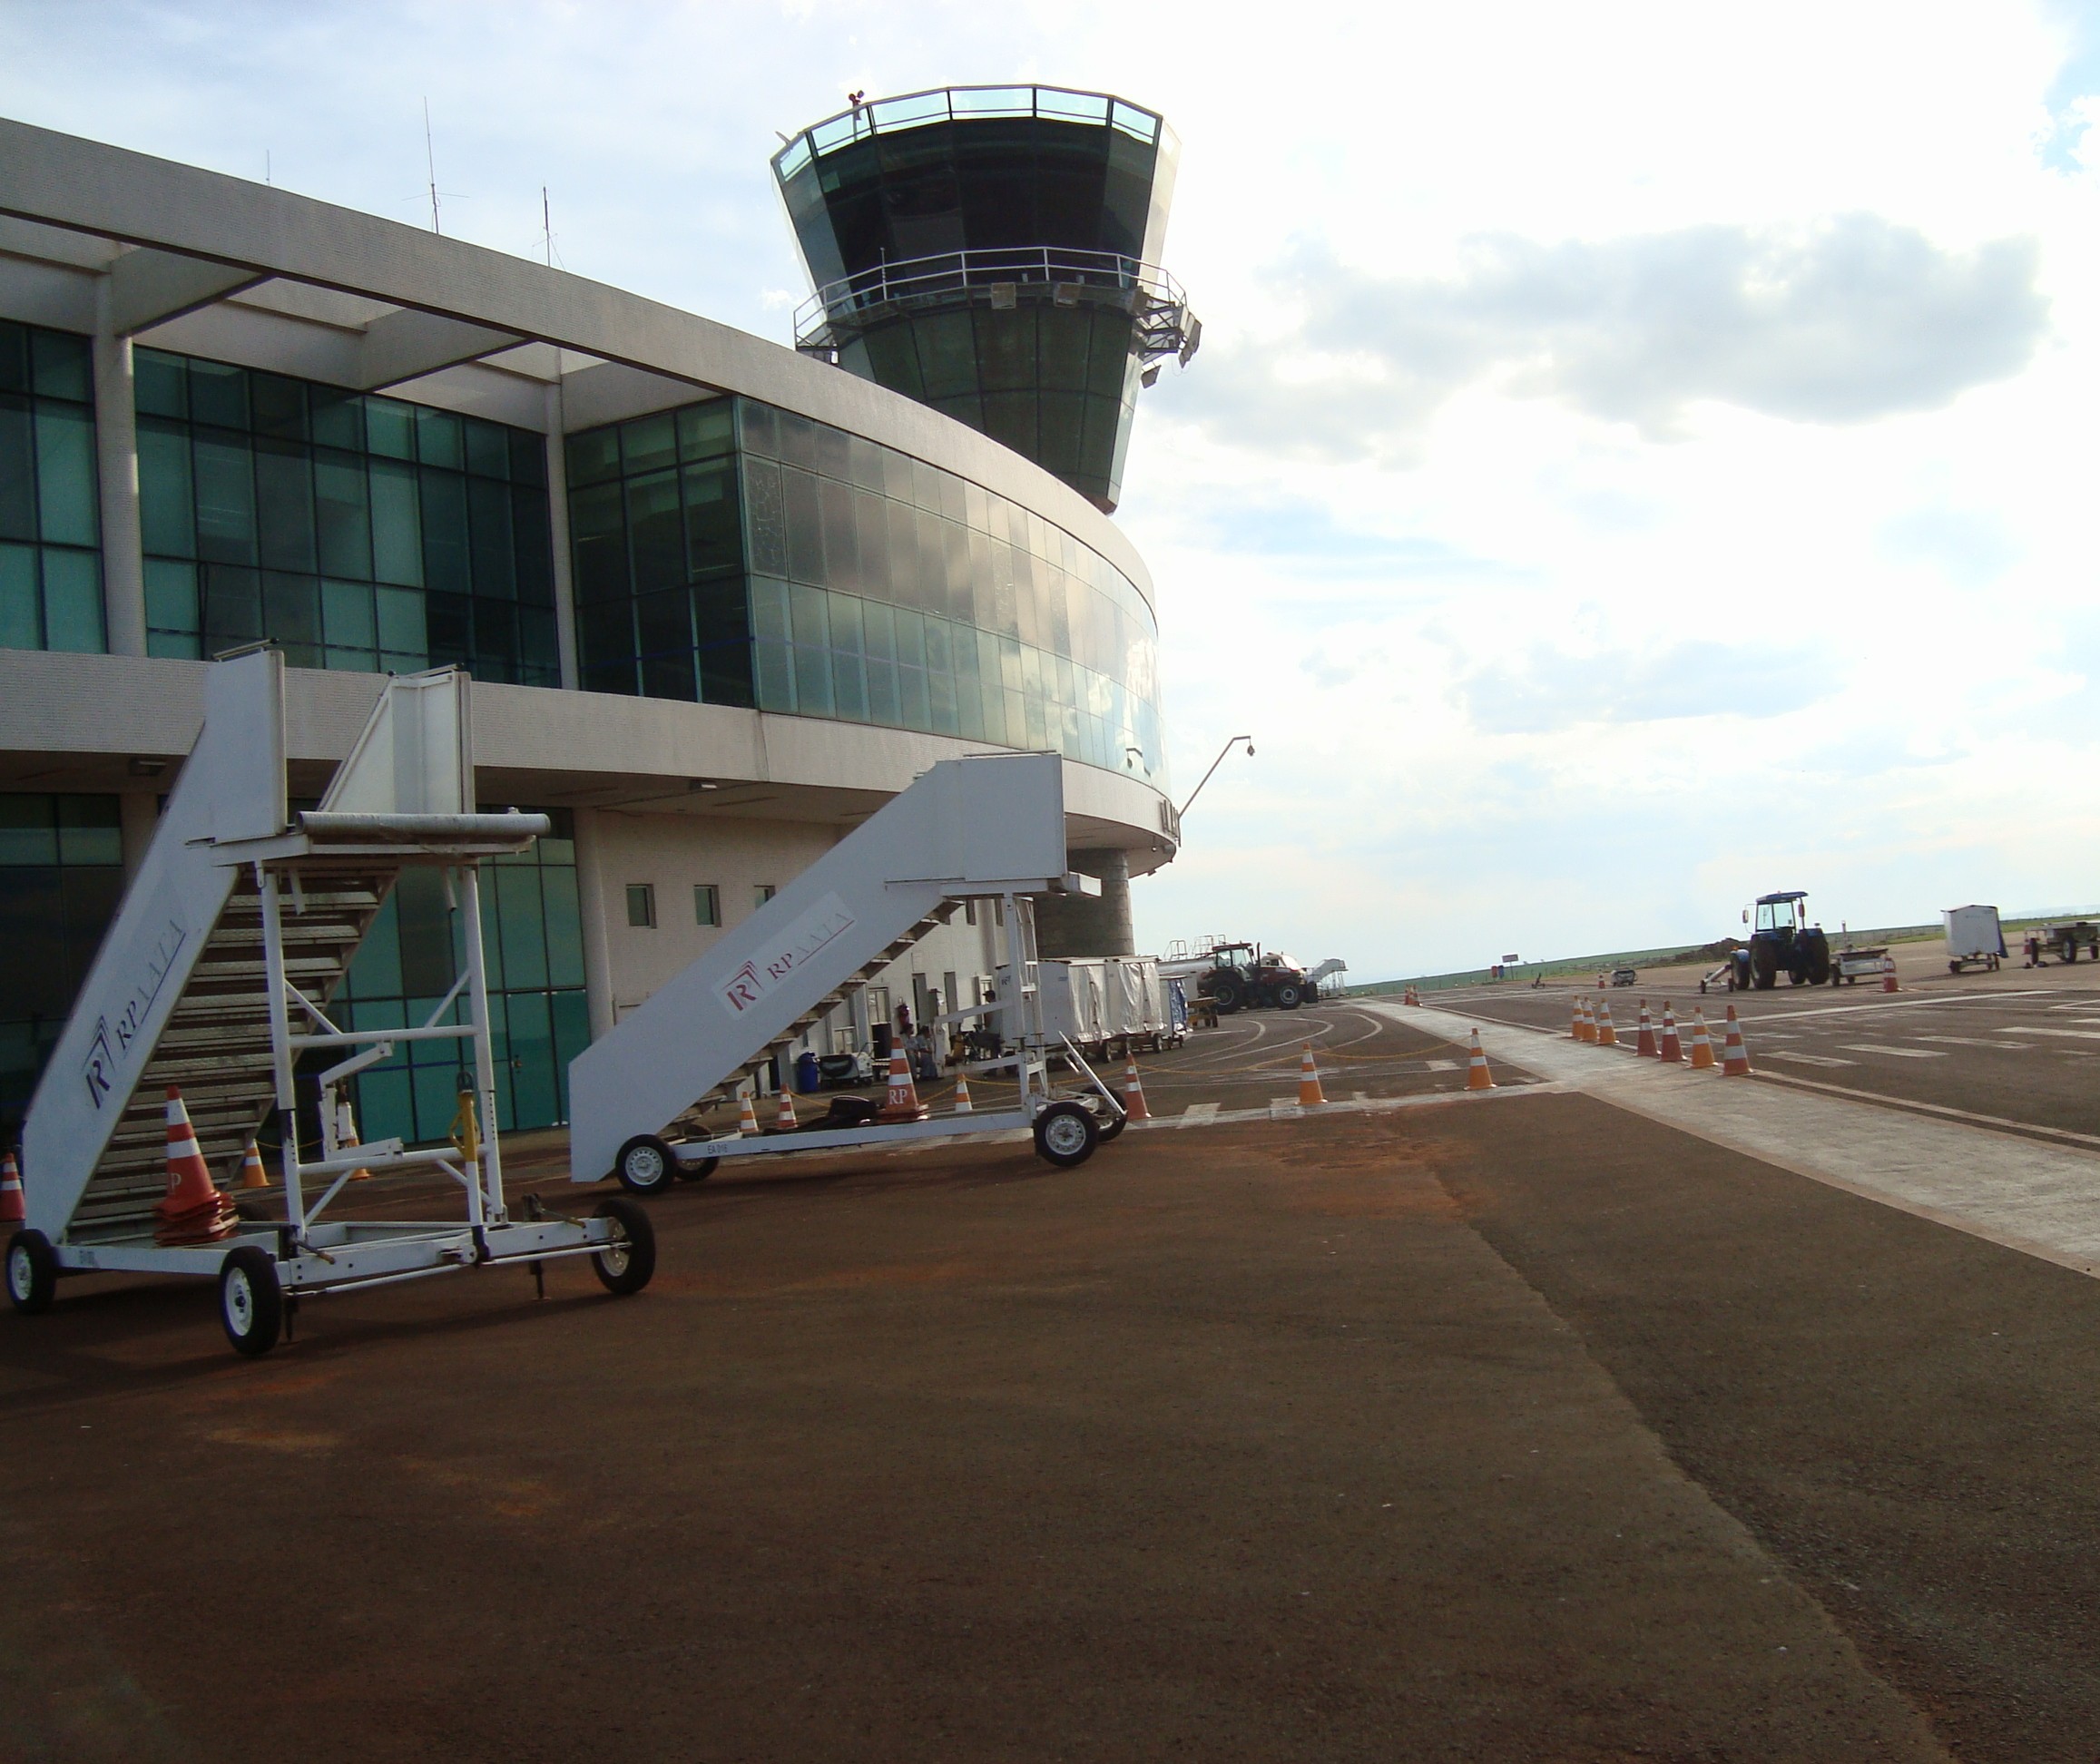 Cinco empresas disputam licitação da torre de controle do aeroporto